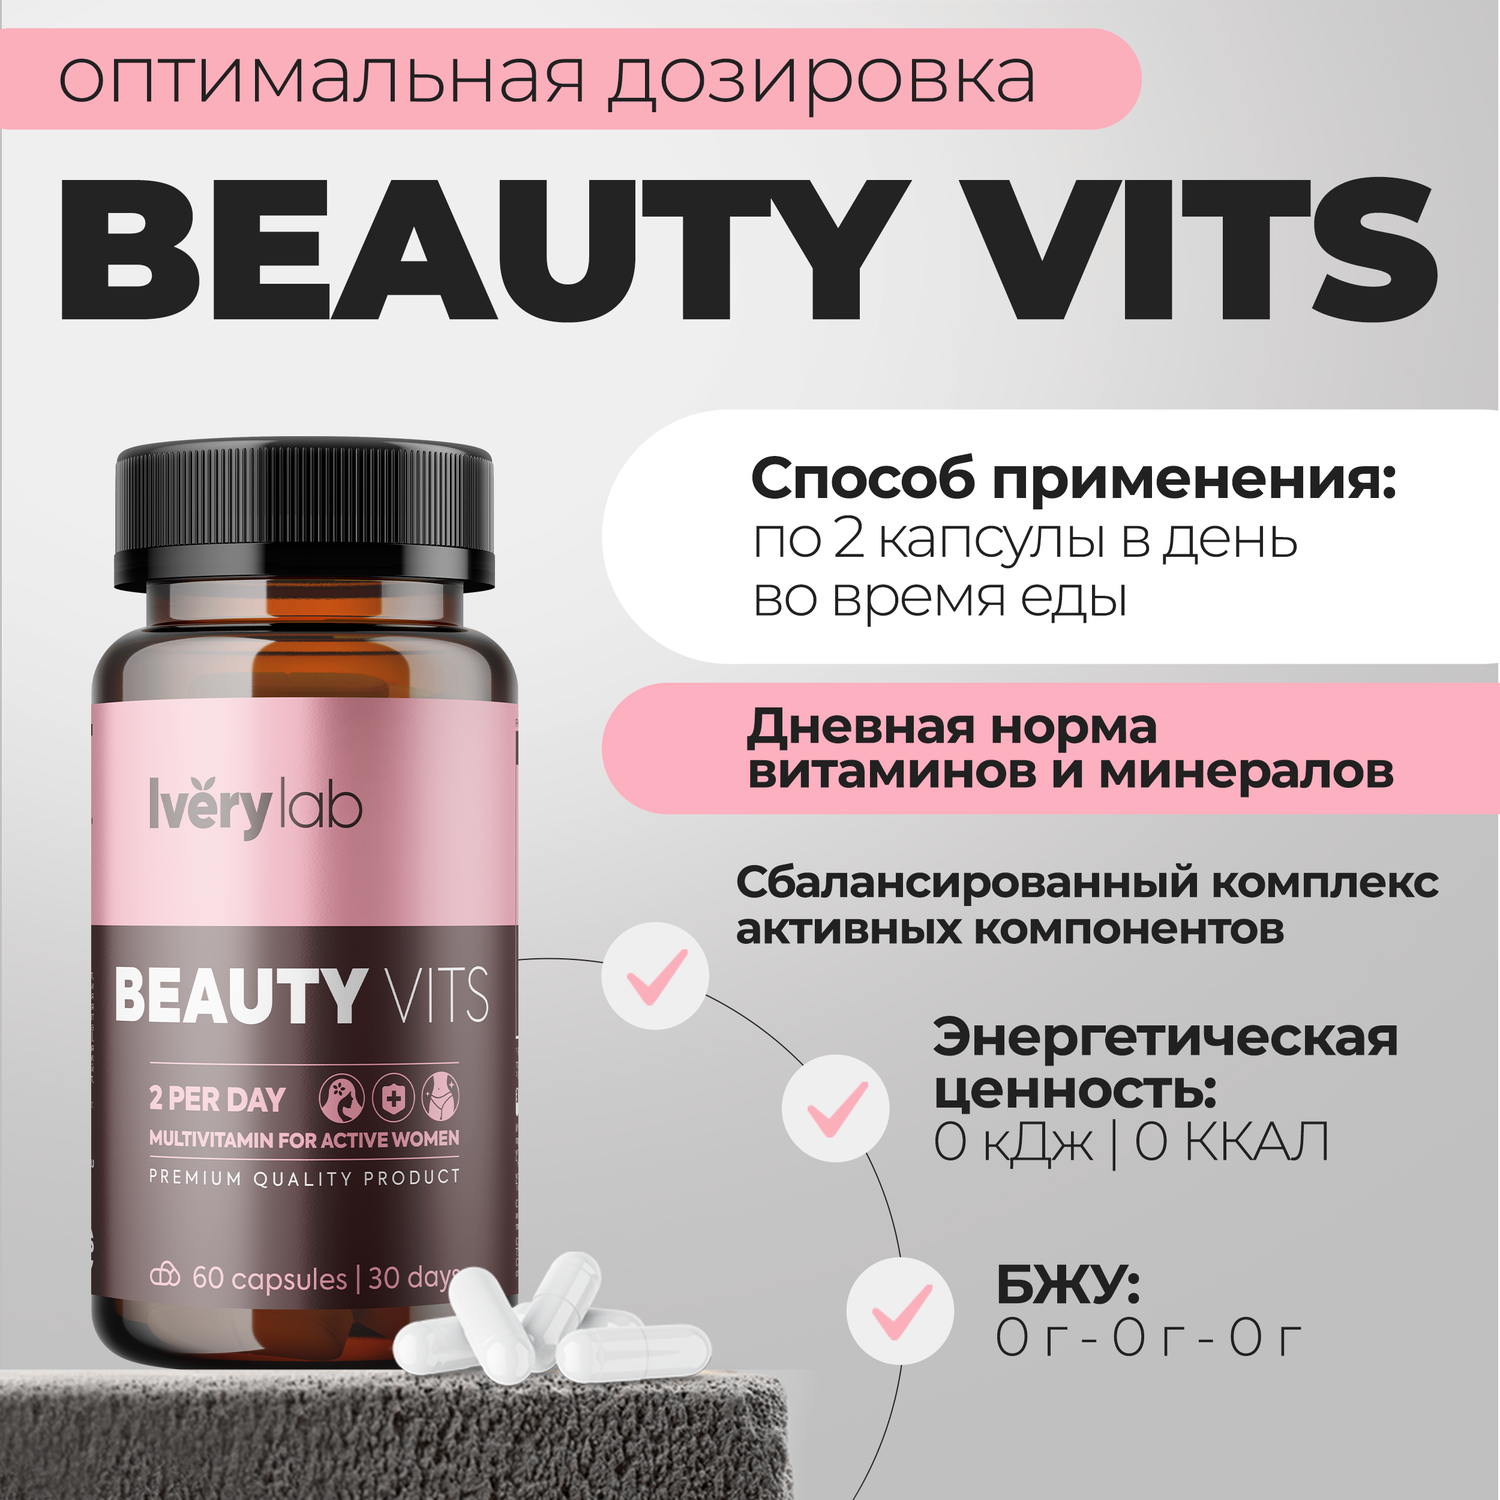 БАД Iverylab Женский витаминно-минеральный комплекс для красоты и здоровья Beauty Vits - фото 3